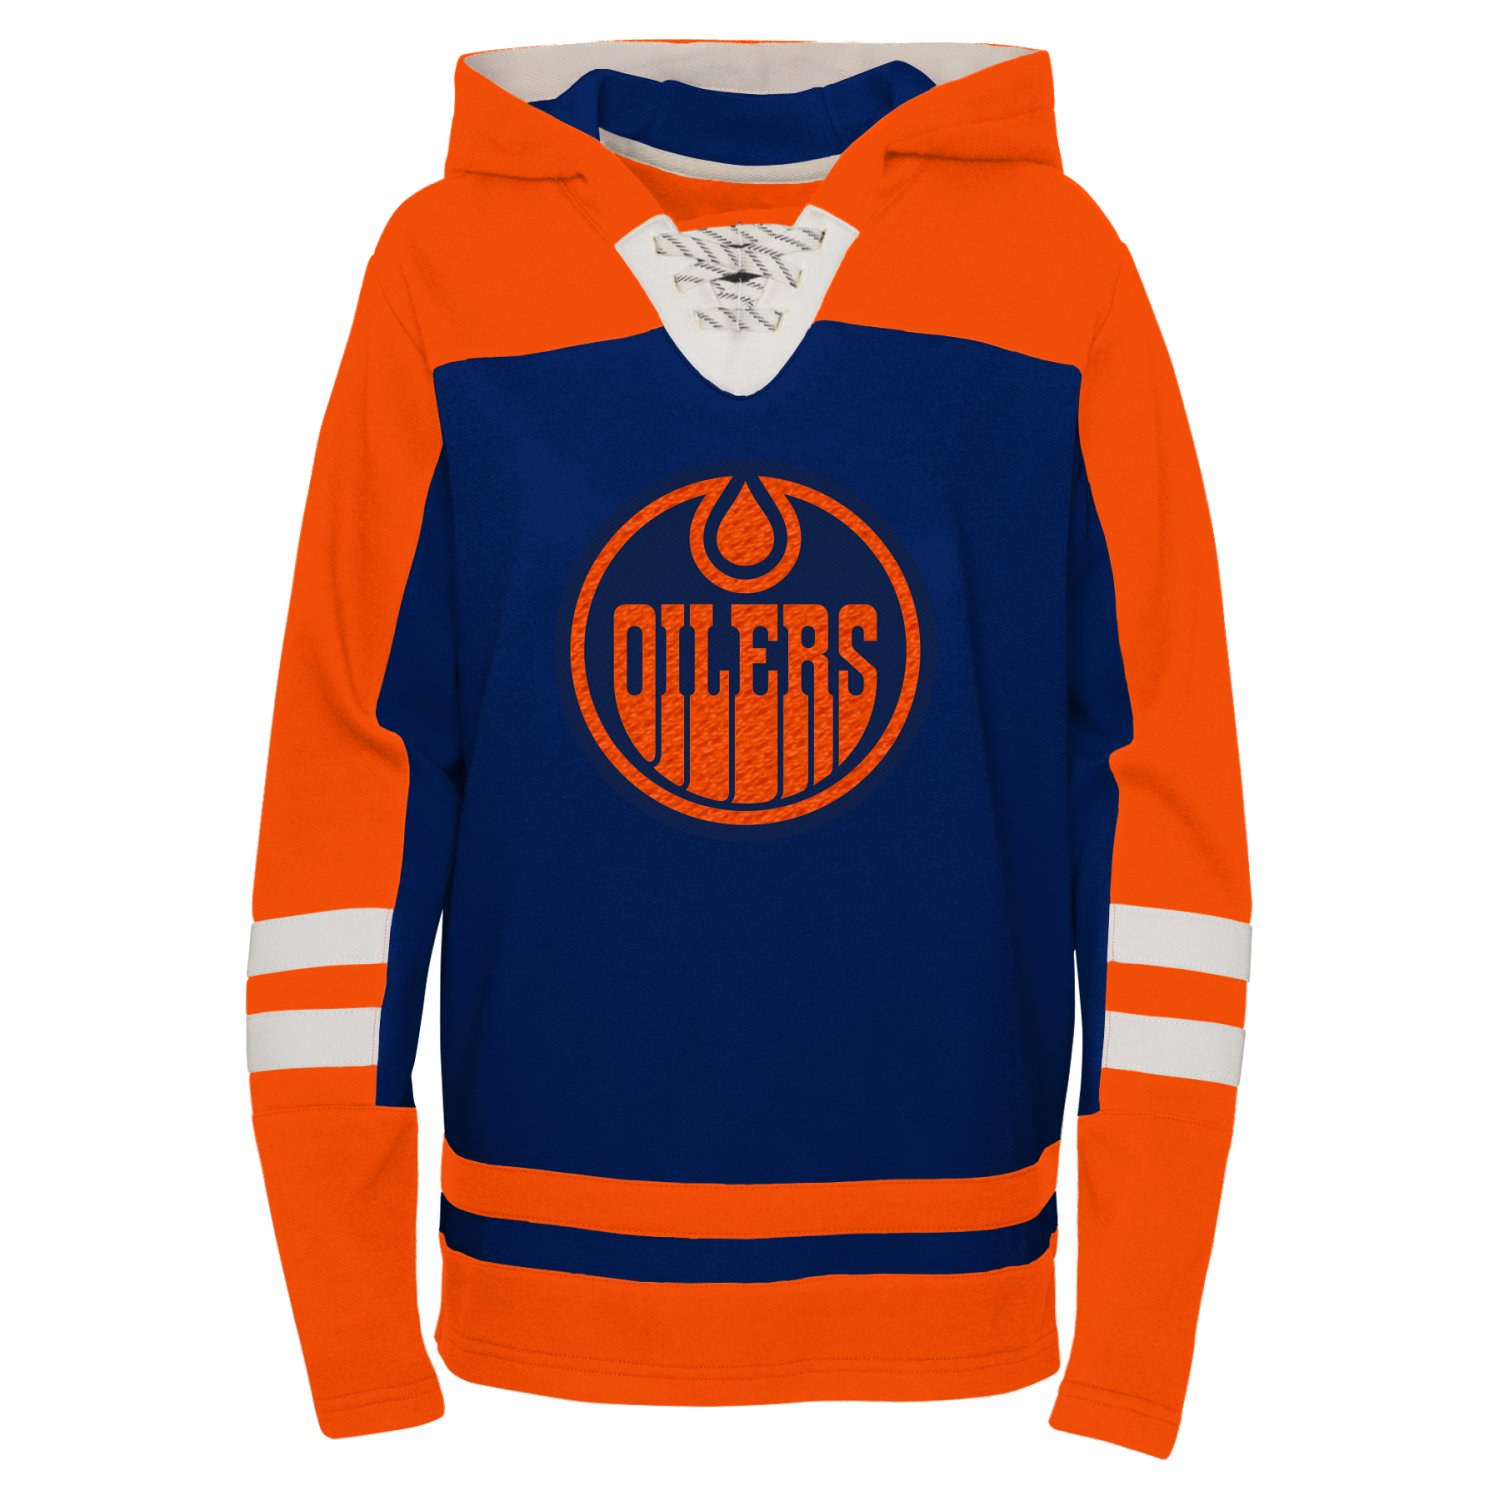 Kids NHL Hockey Hoody - AGELESS Edmonton Oilers | Kids | Apparel ...